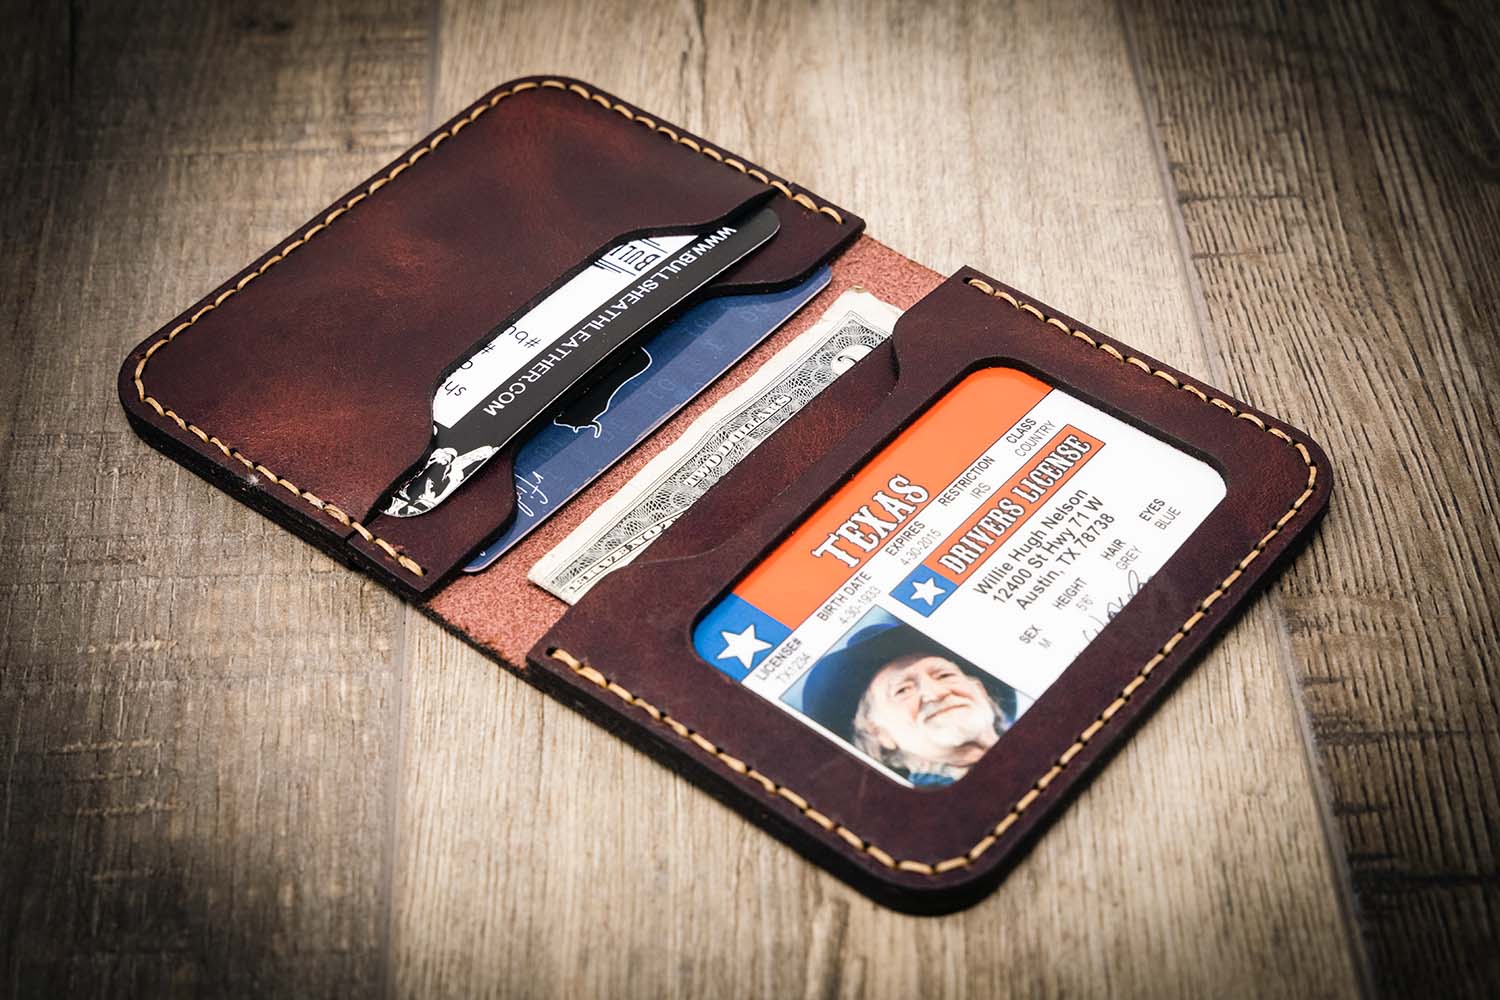 Mens VT Leather Minimalist Credit Card Holder Wallet Slim Front Pocket Black